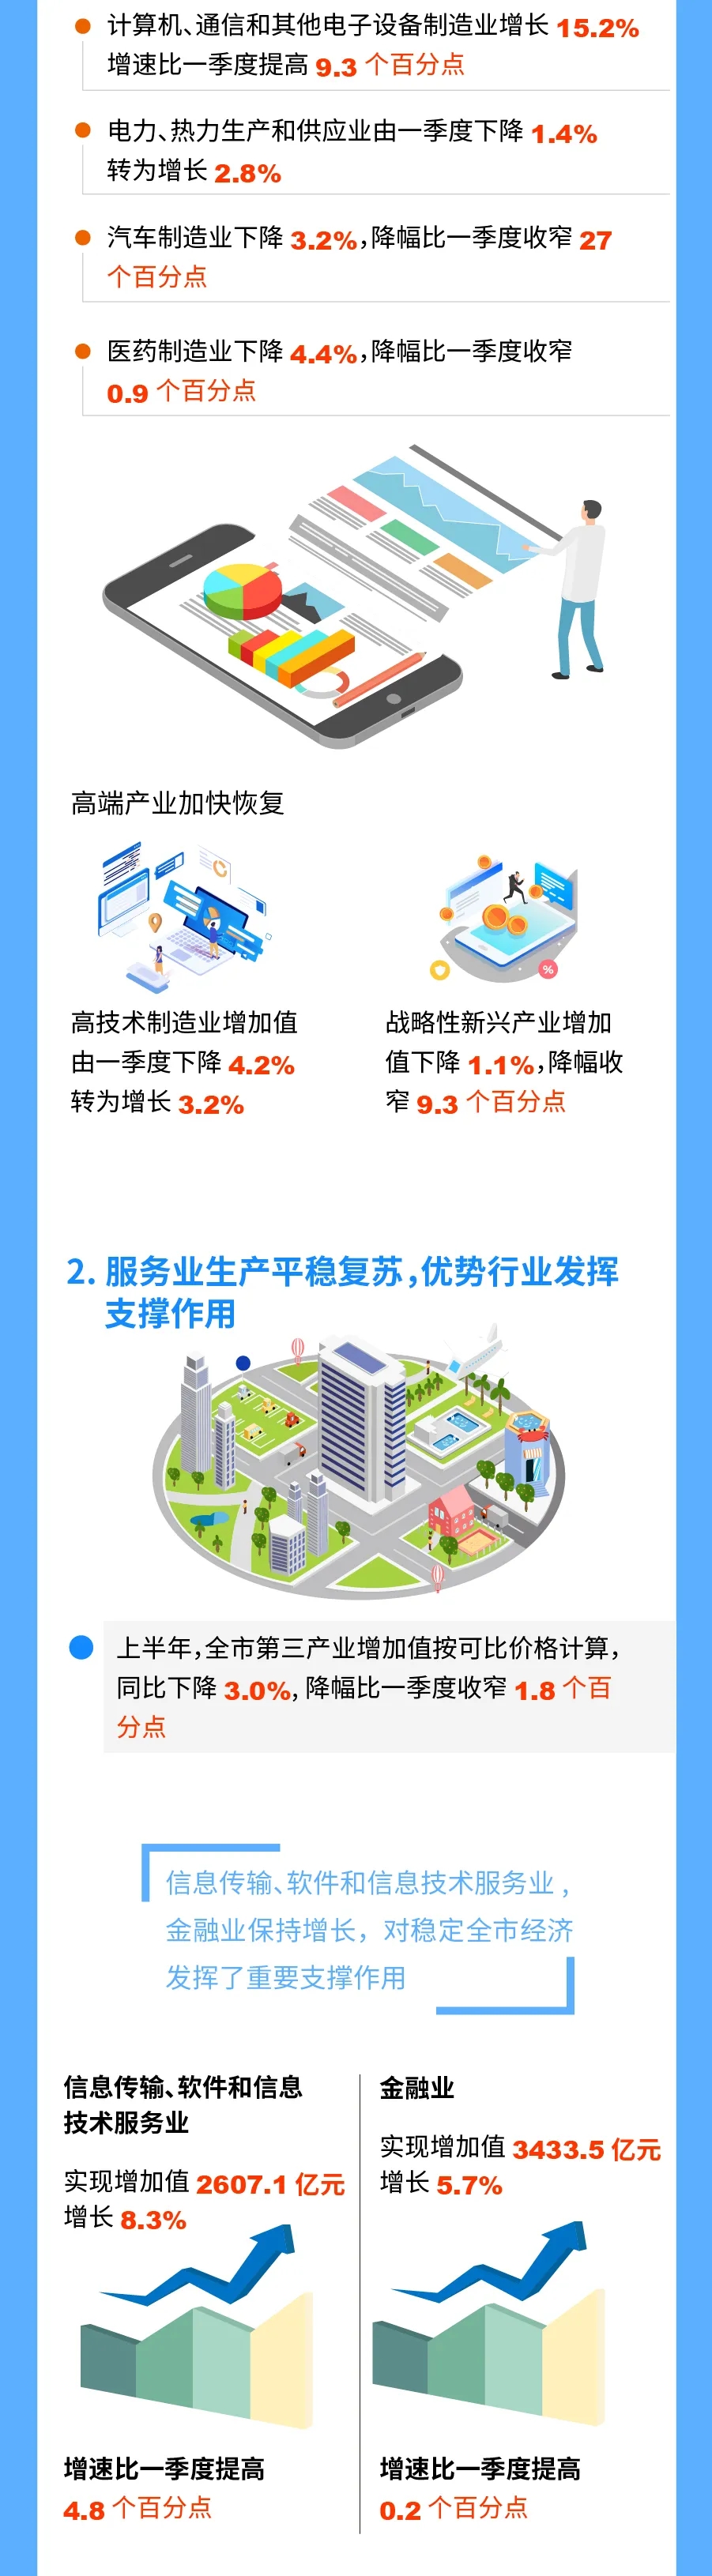 图解2020年上半年北京市经济运行情况